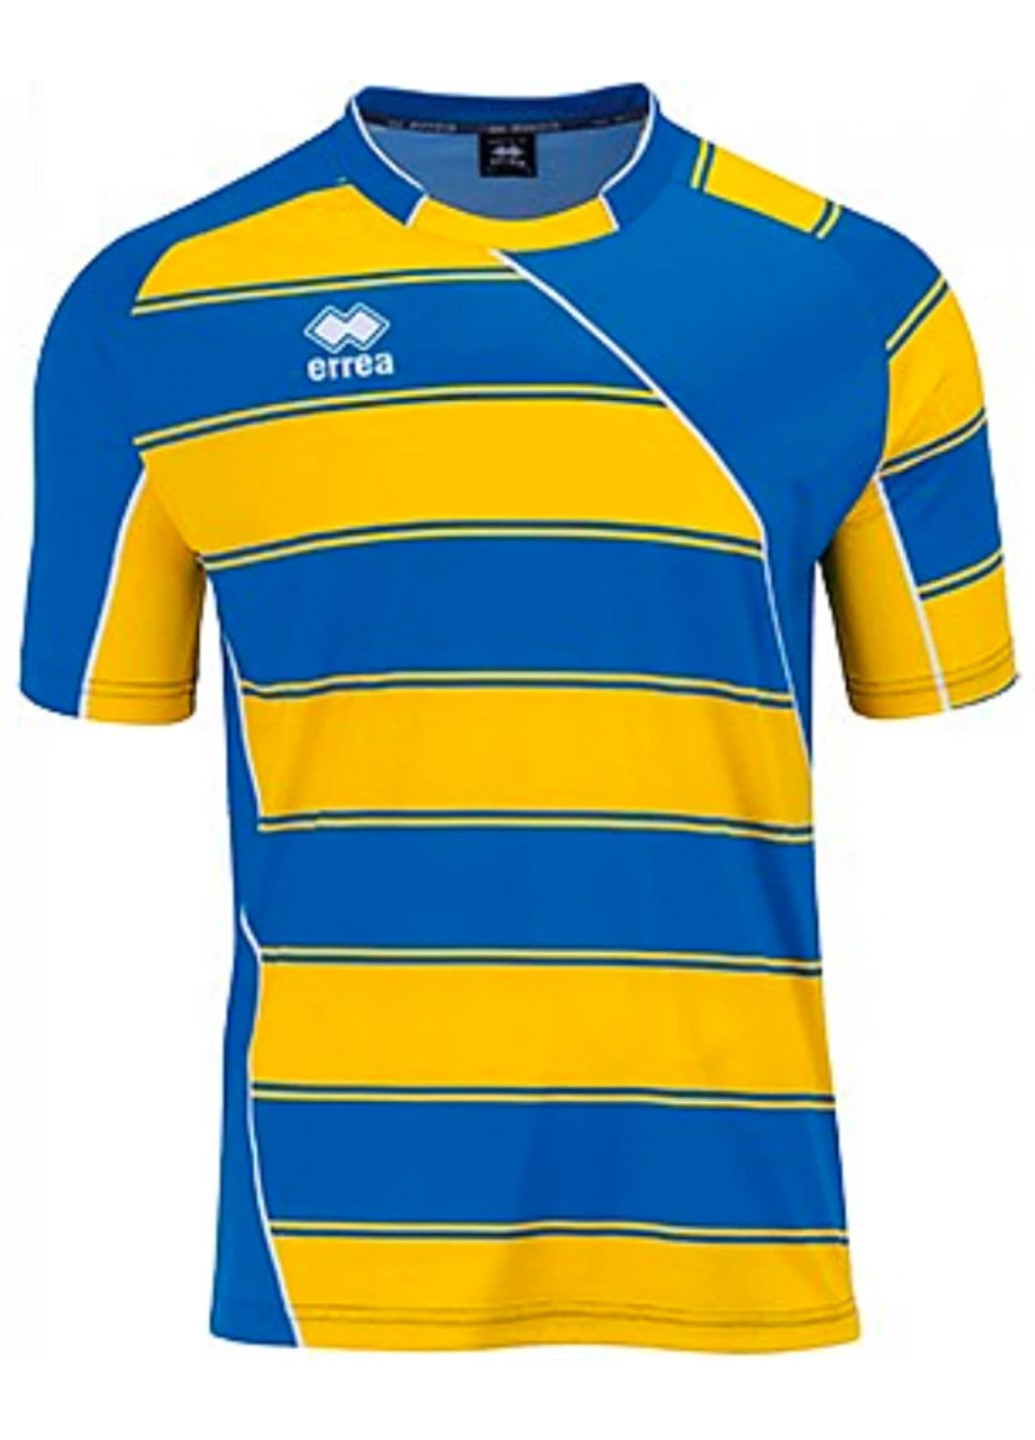 Голубая футболка мужская игровая d130-167 Errea